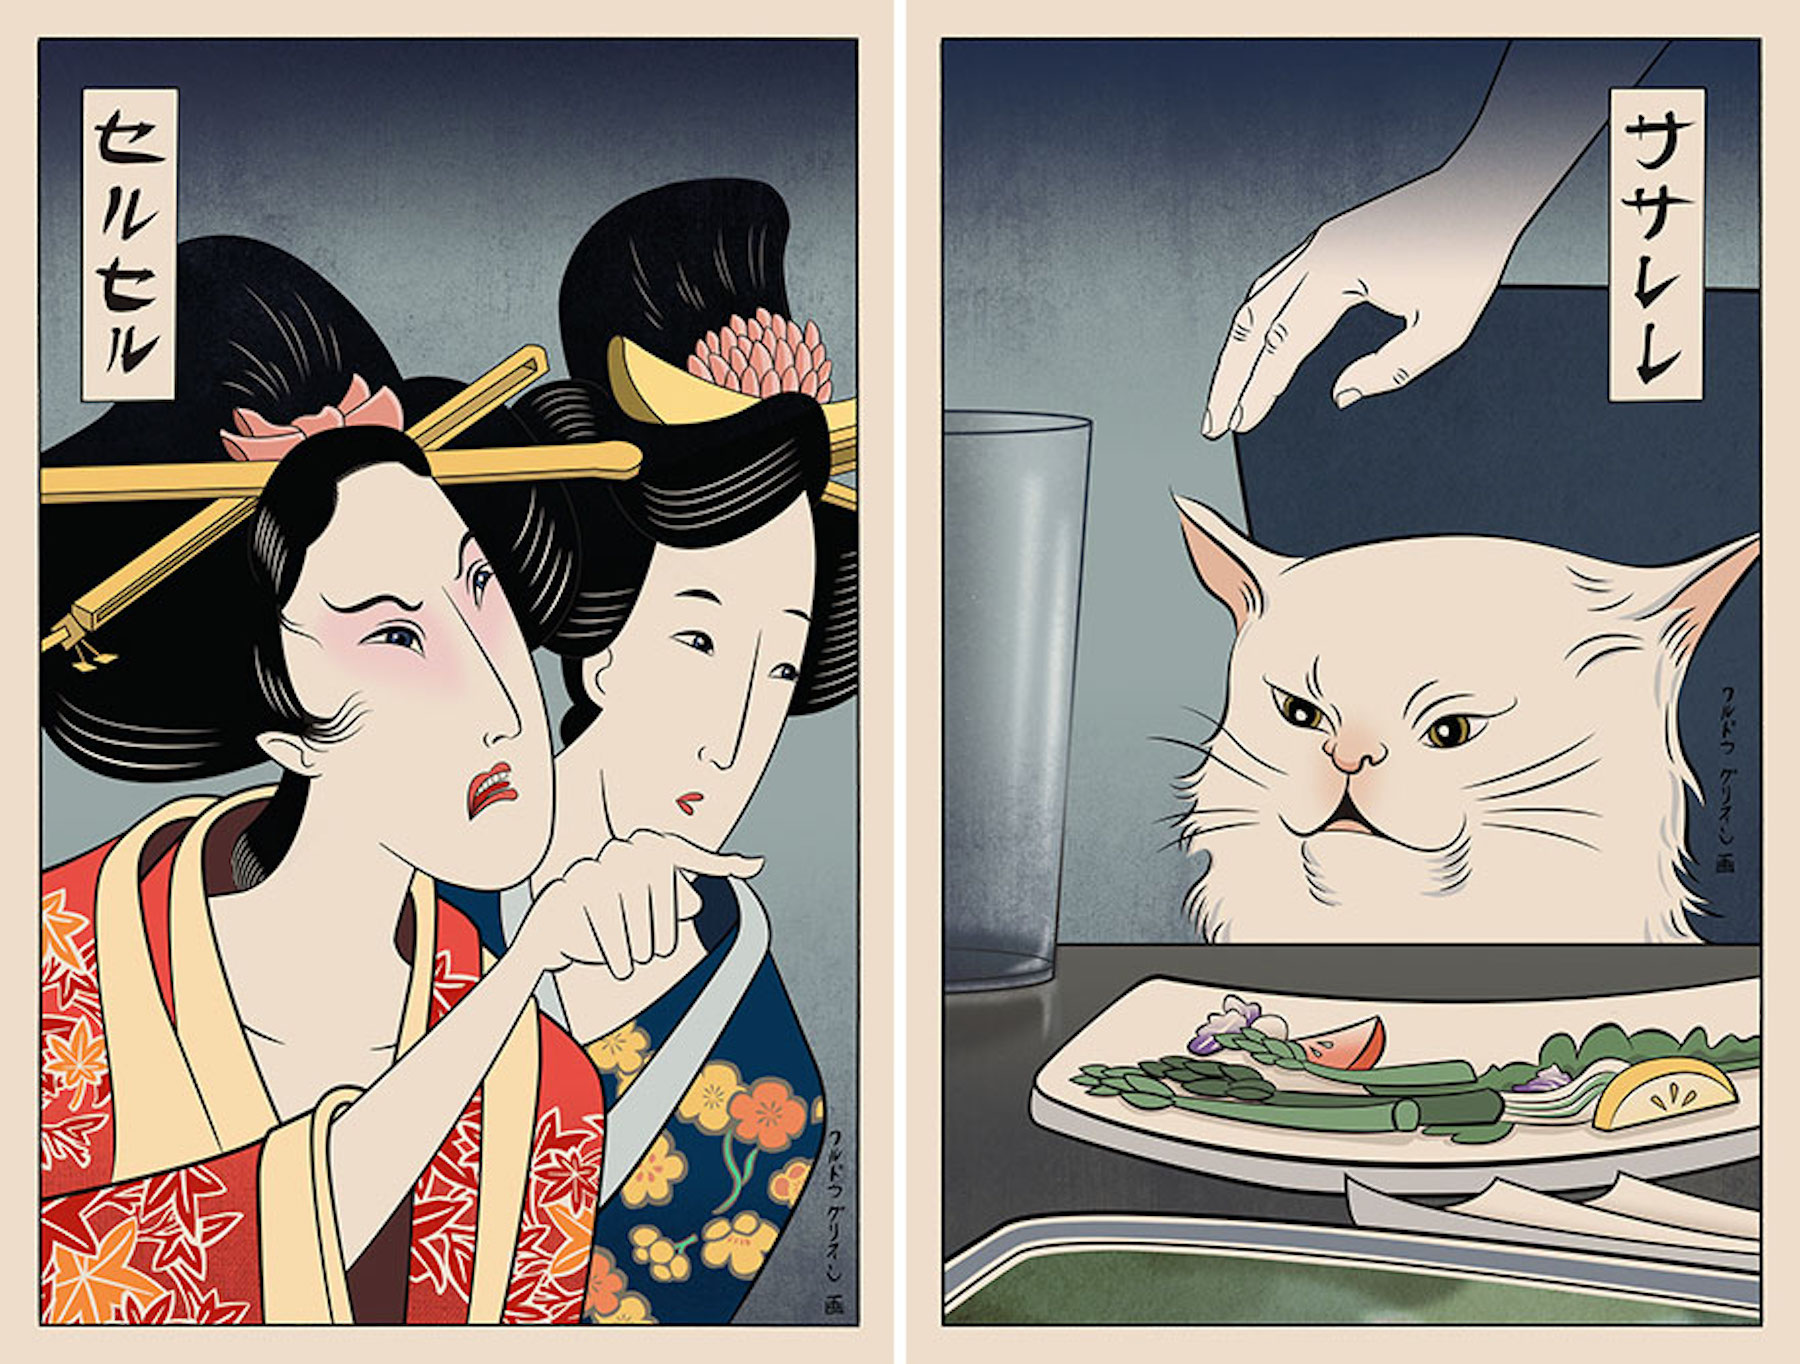 L'artiste Ukiyo Memes transforme les mèmes internet en estampes japonaises